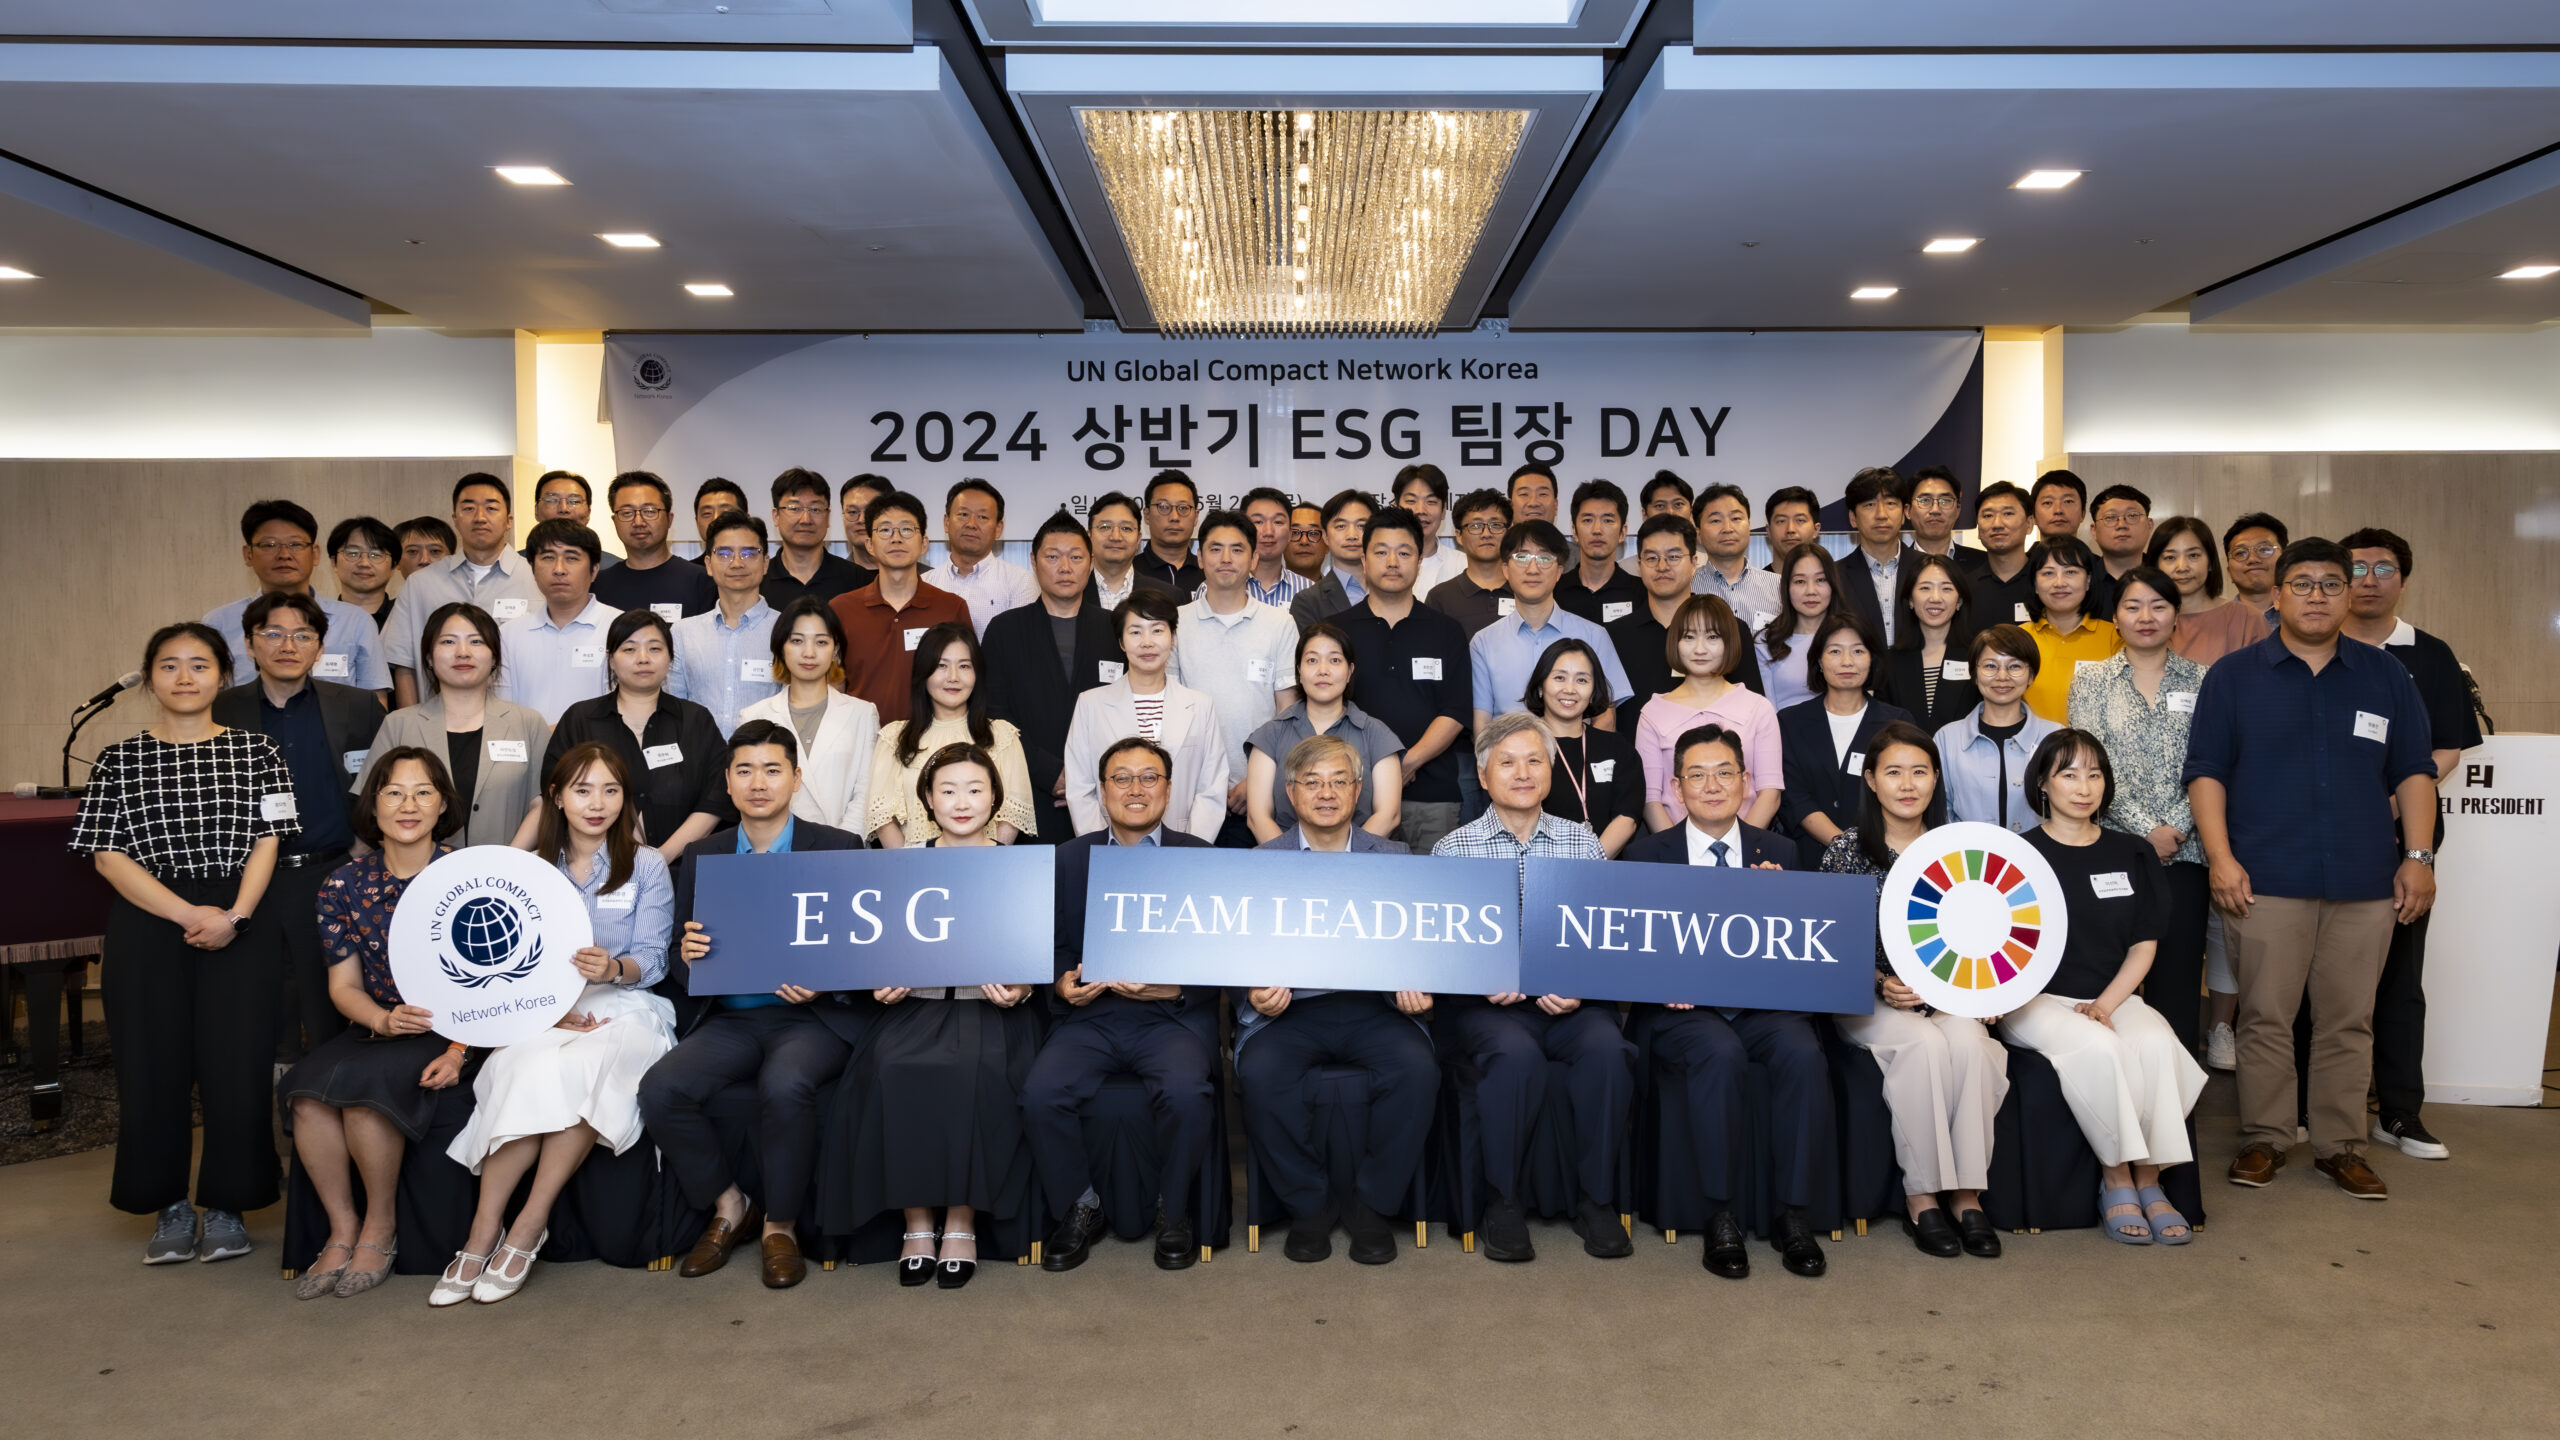 유엔글로벌콤팩트(UNGC) 한국협회가 개최한 'ESG 팀장 네트워크'에 참석한 국내 회원 기업 ESG 팀장들이 기념 사진을 촬영하고 있다. /유엔글로벌콤팩트(UNGC)